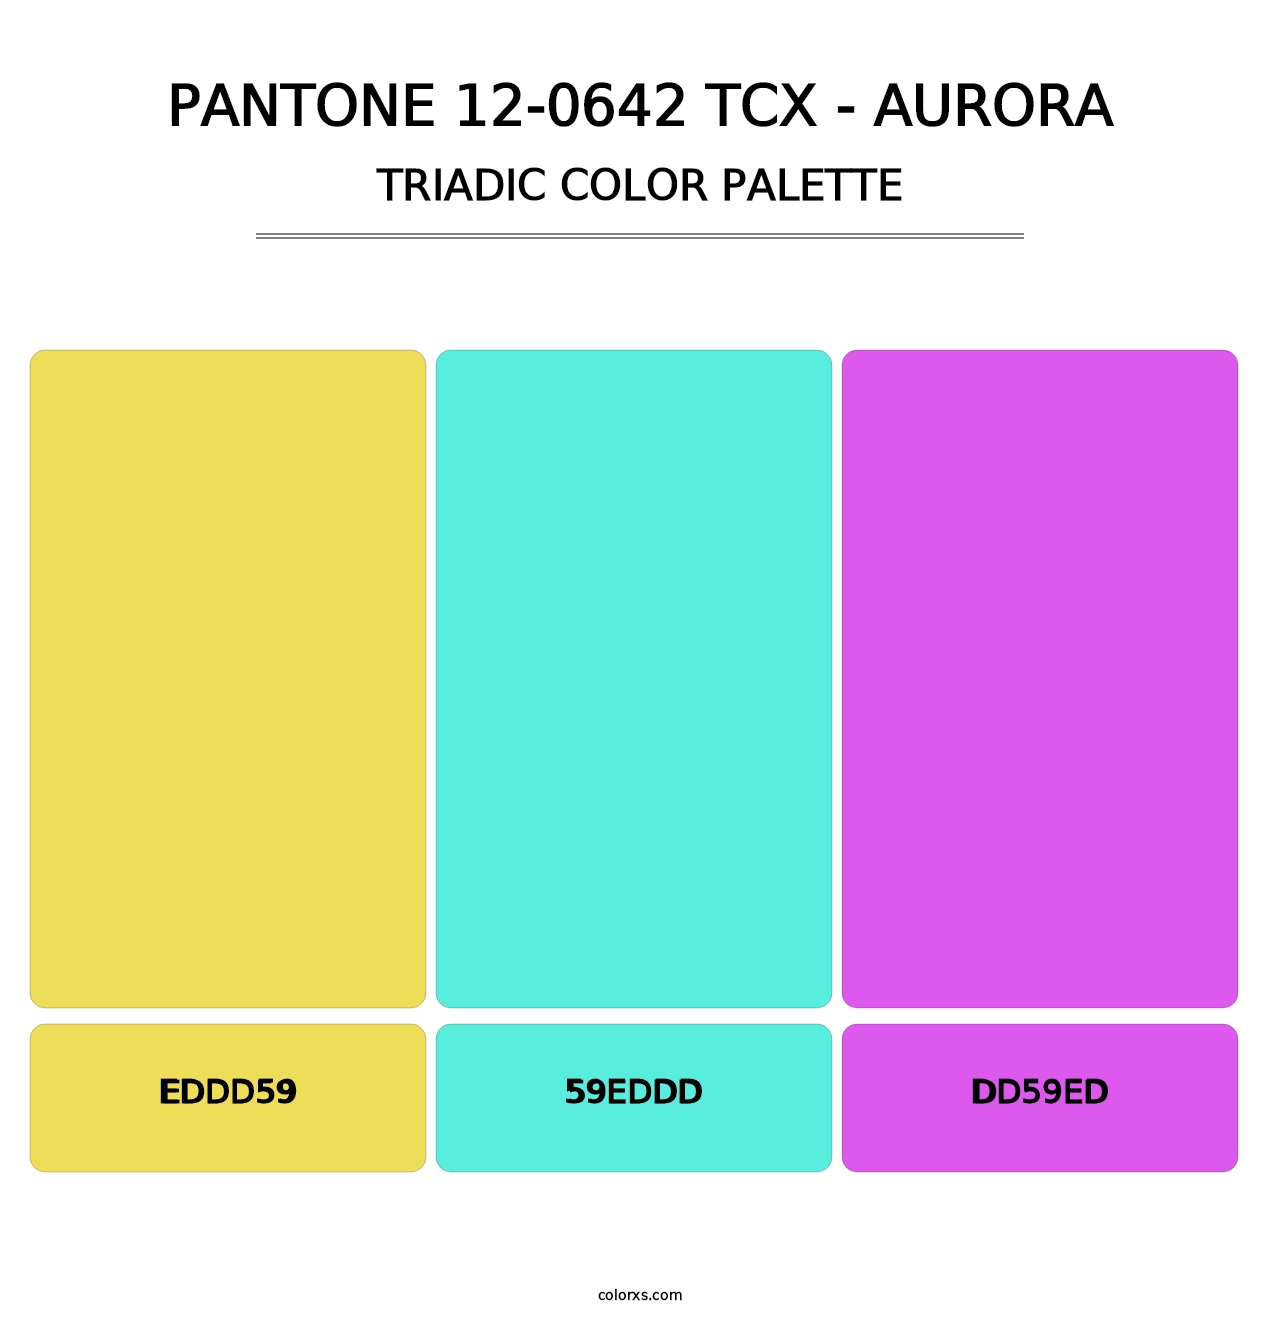 PANTONE 12-0642 TCX - Aurora - Triadic Color Palette